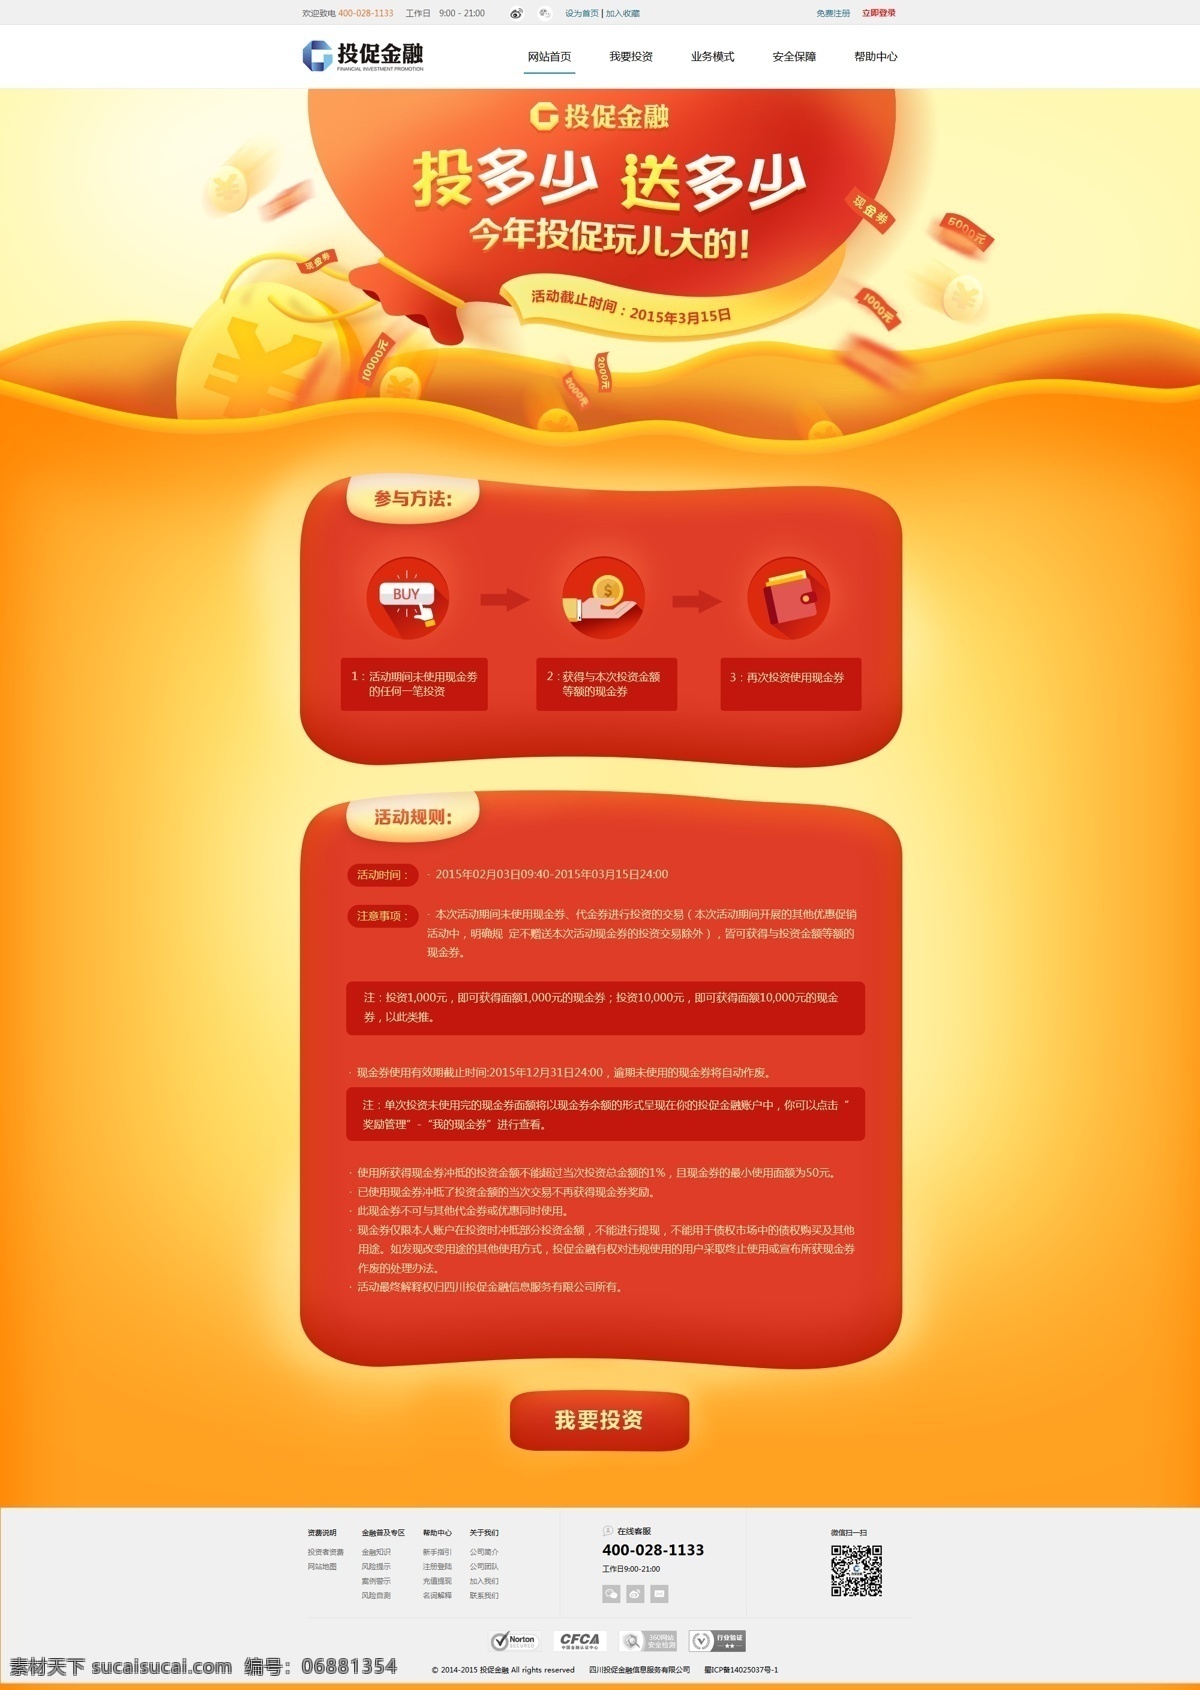 网 投 平台 活动 专题 页面 模板 页面模板 psd素材 橙色